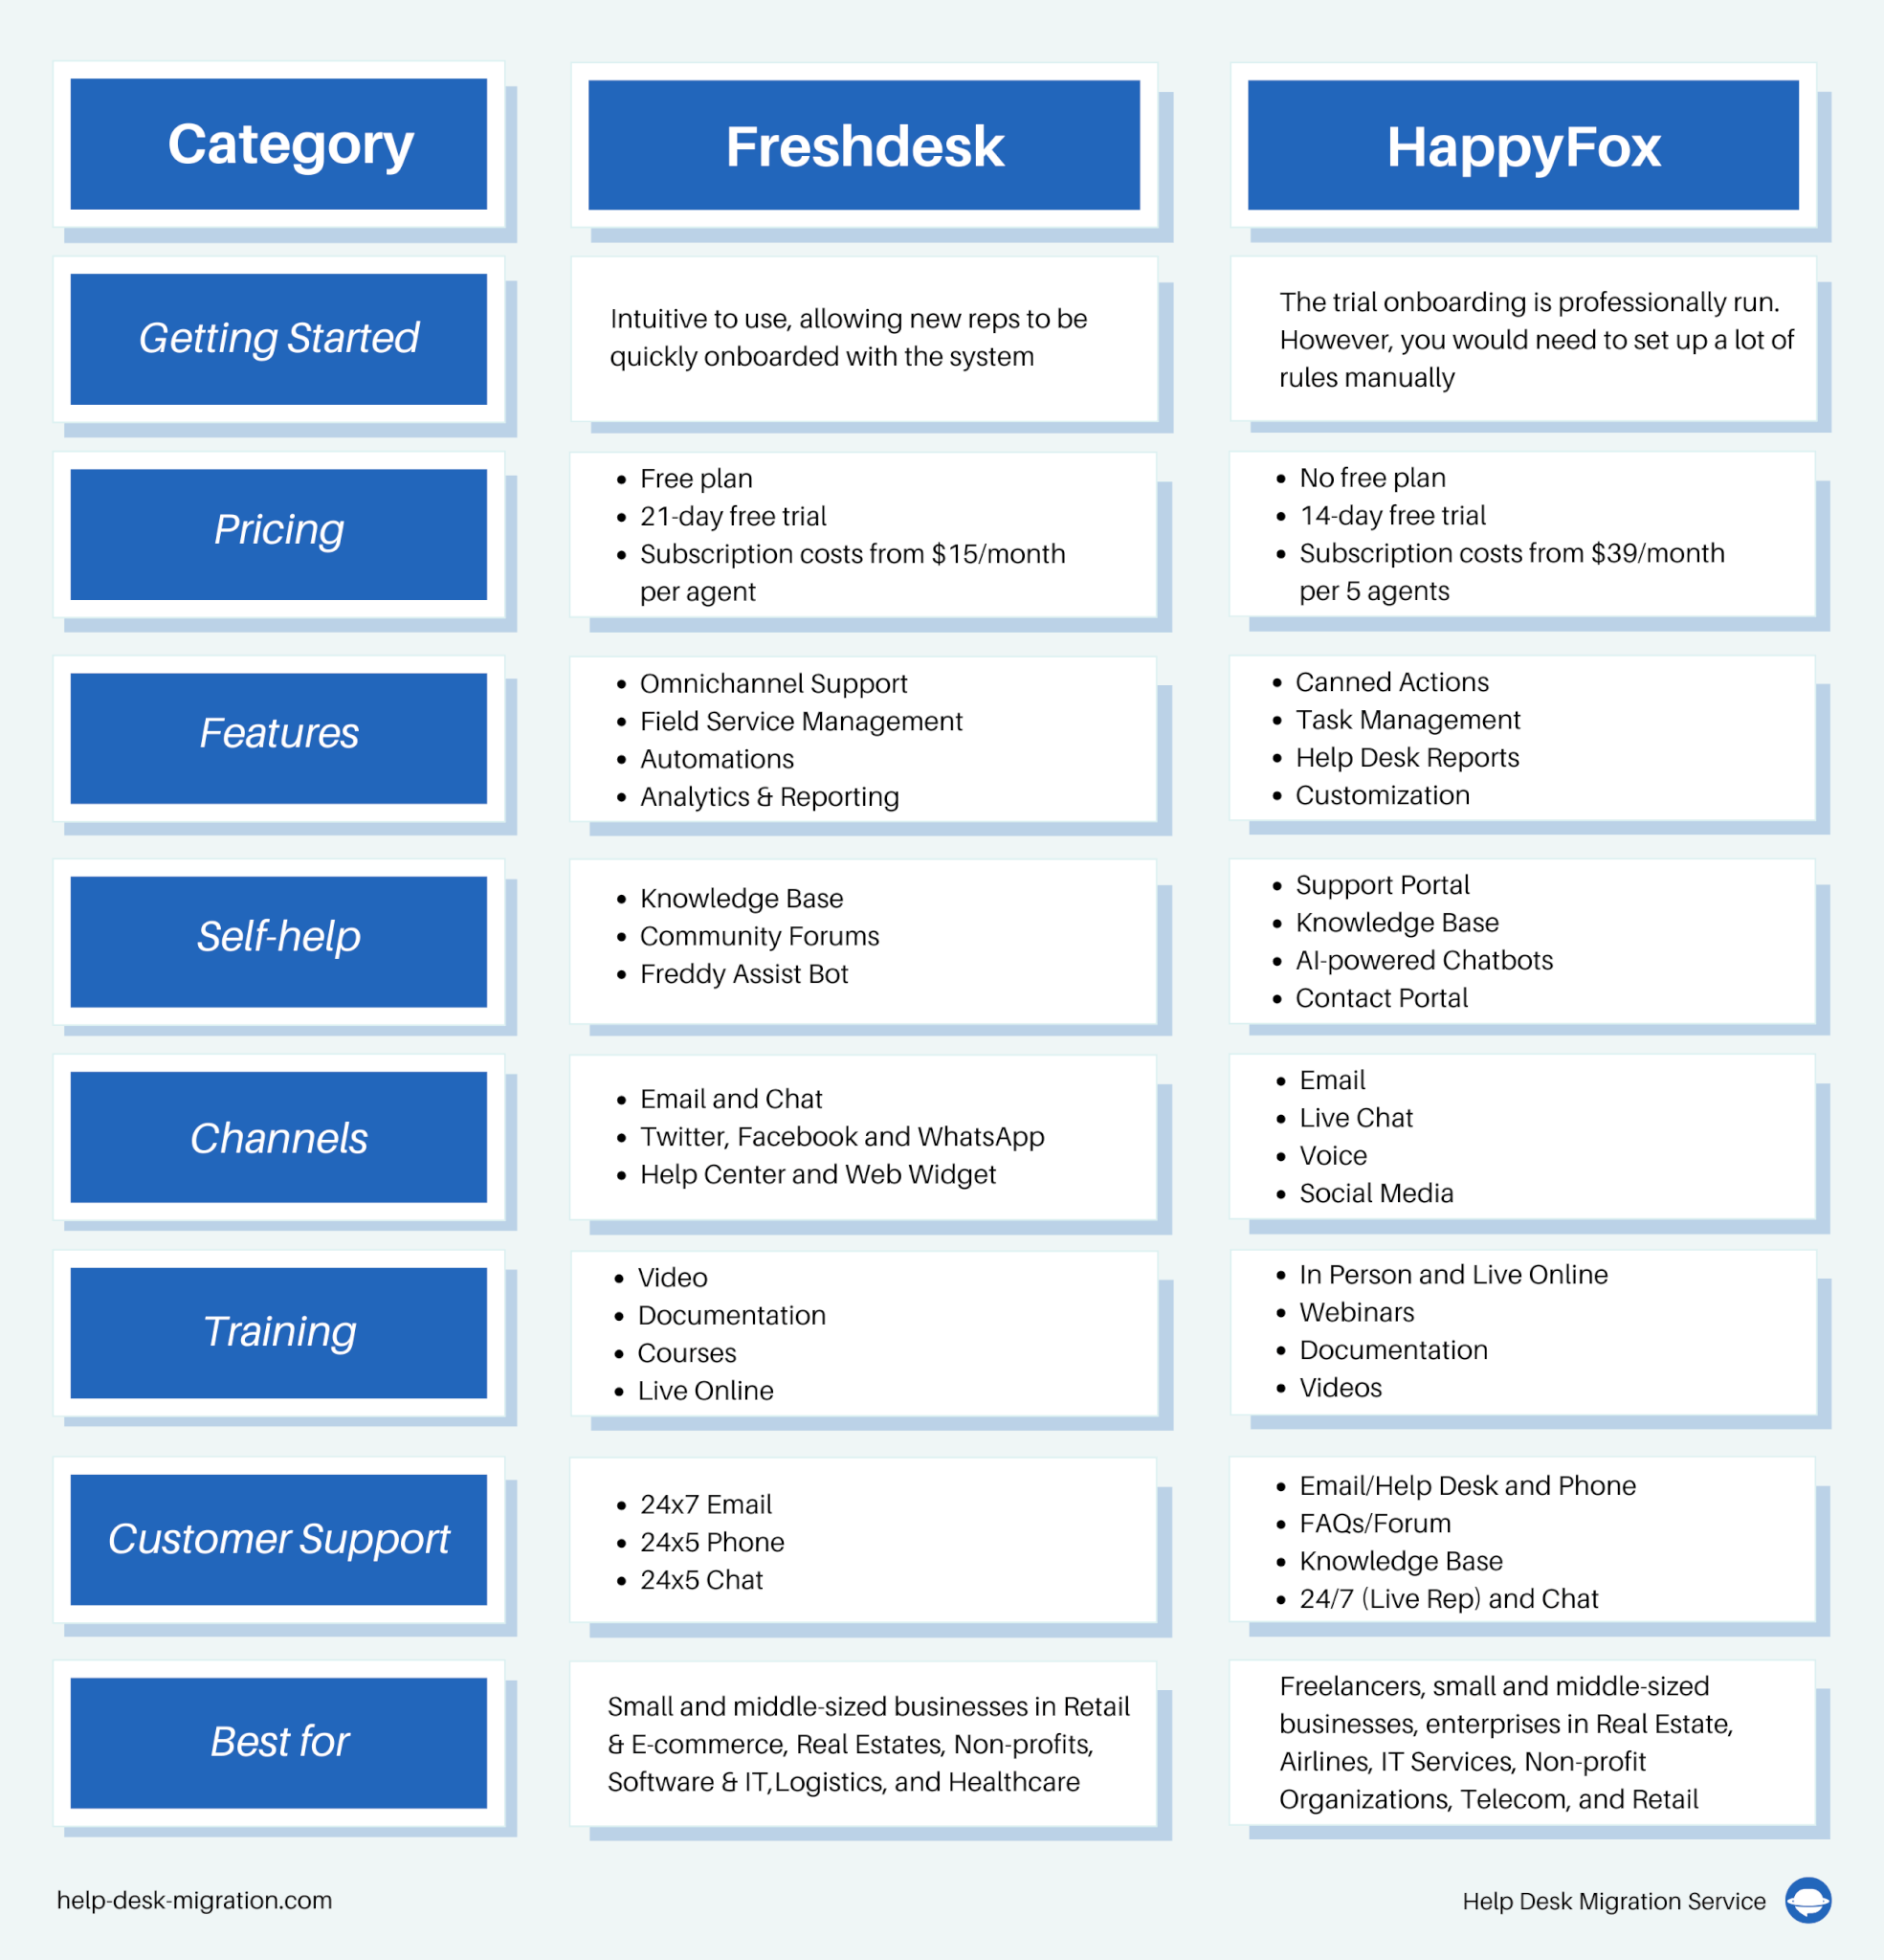 HappyFox vs Freshdesk